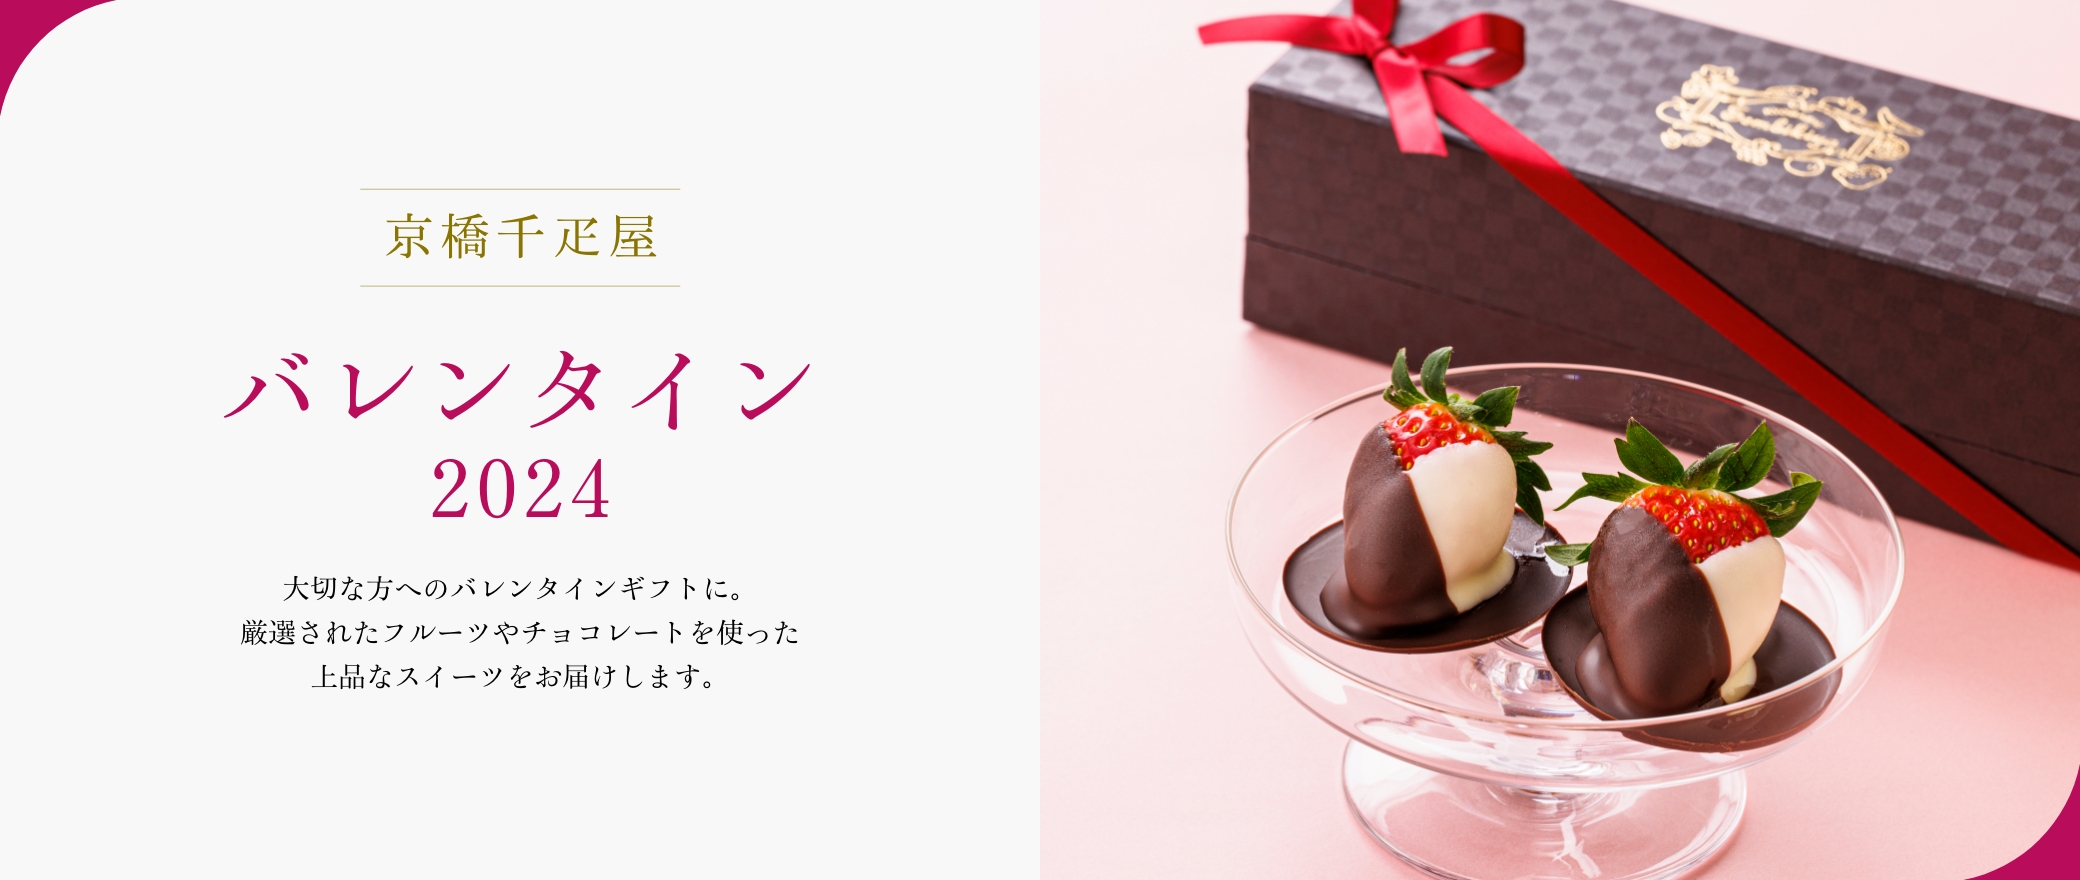 京橋千疋屋 バレンタイン 2024 大切な方へのバレンタインギフトに。厳選されたフルーツやチョコレートを使った上品なスイーツをお届けします。